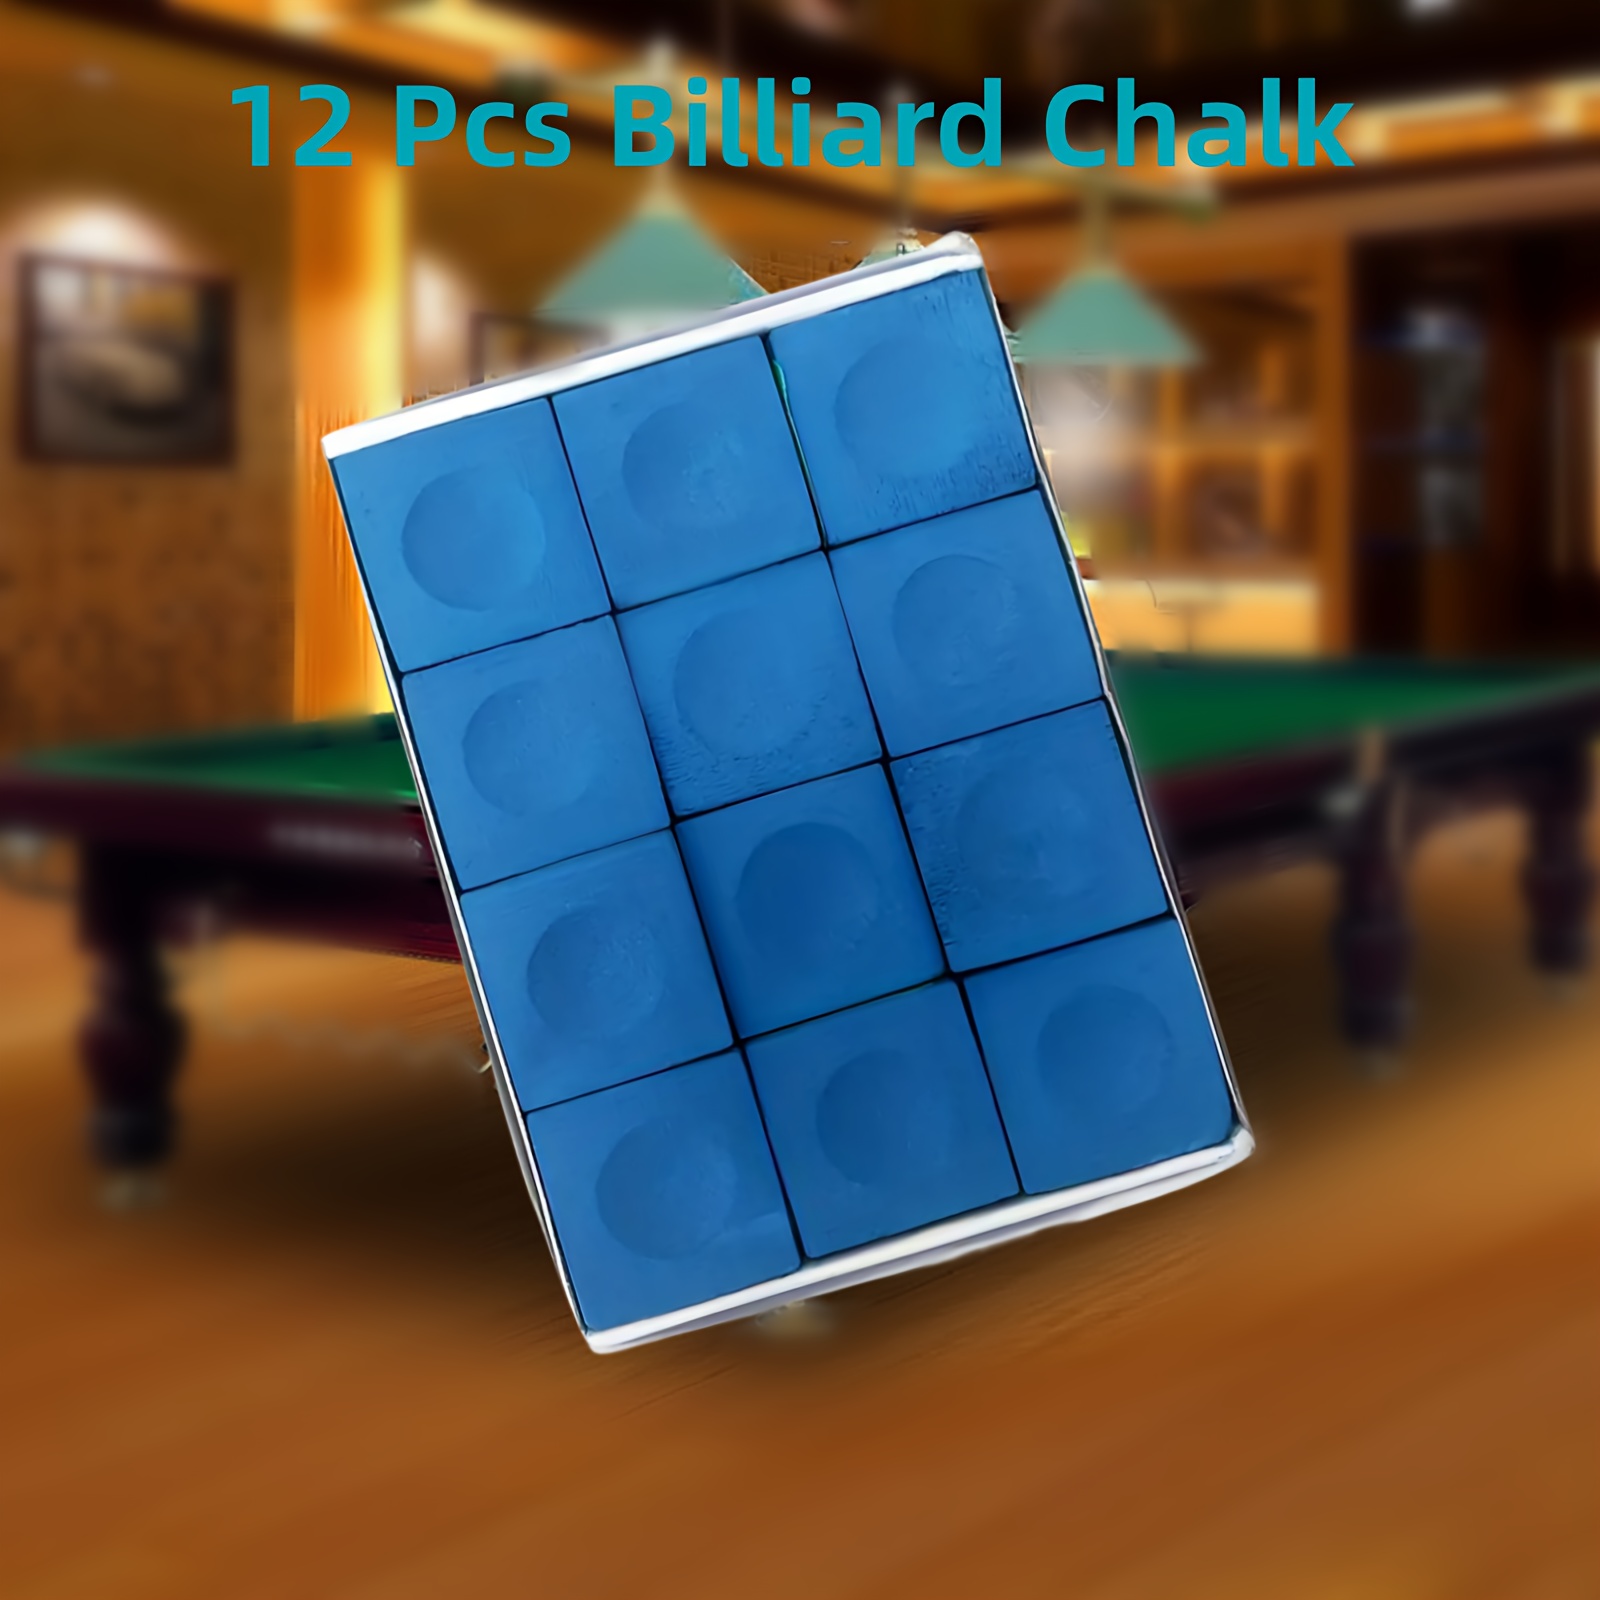 

12pcs Billiard Cue Chalks, Professional Pool Cue Chalk